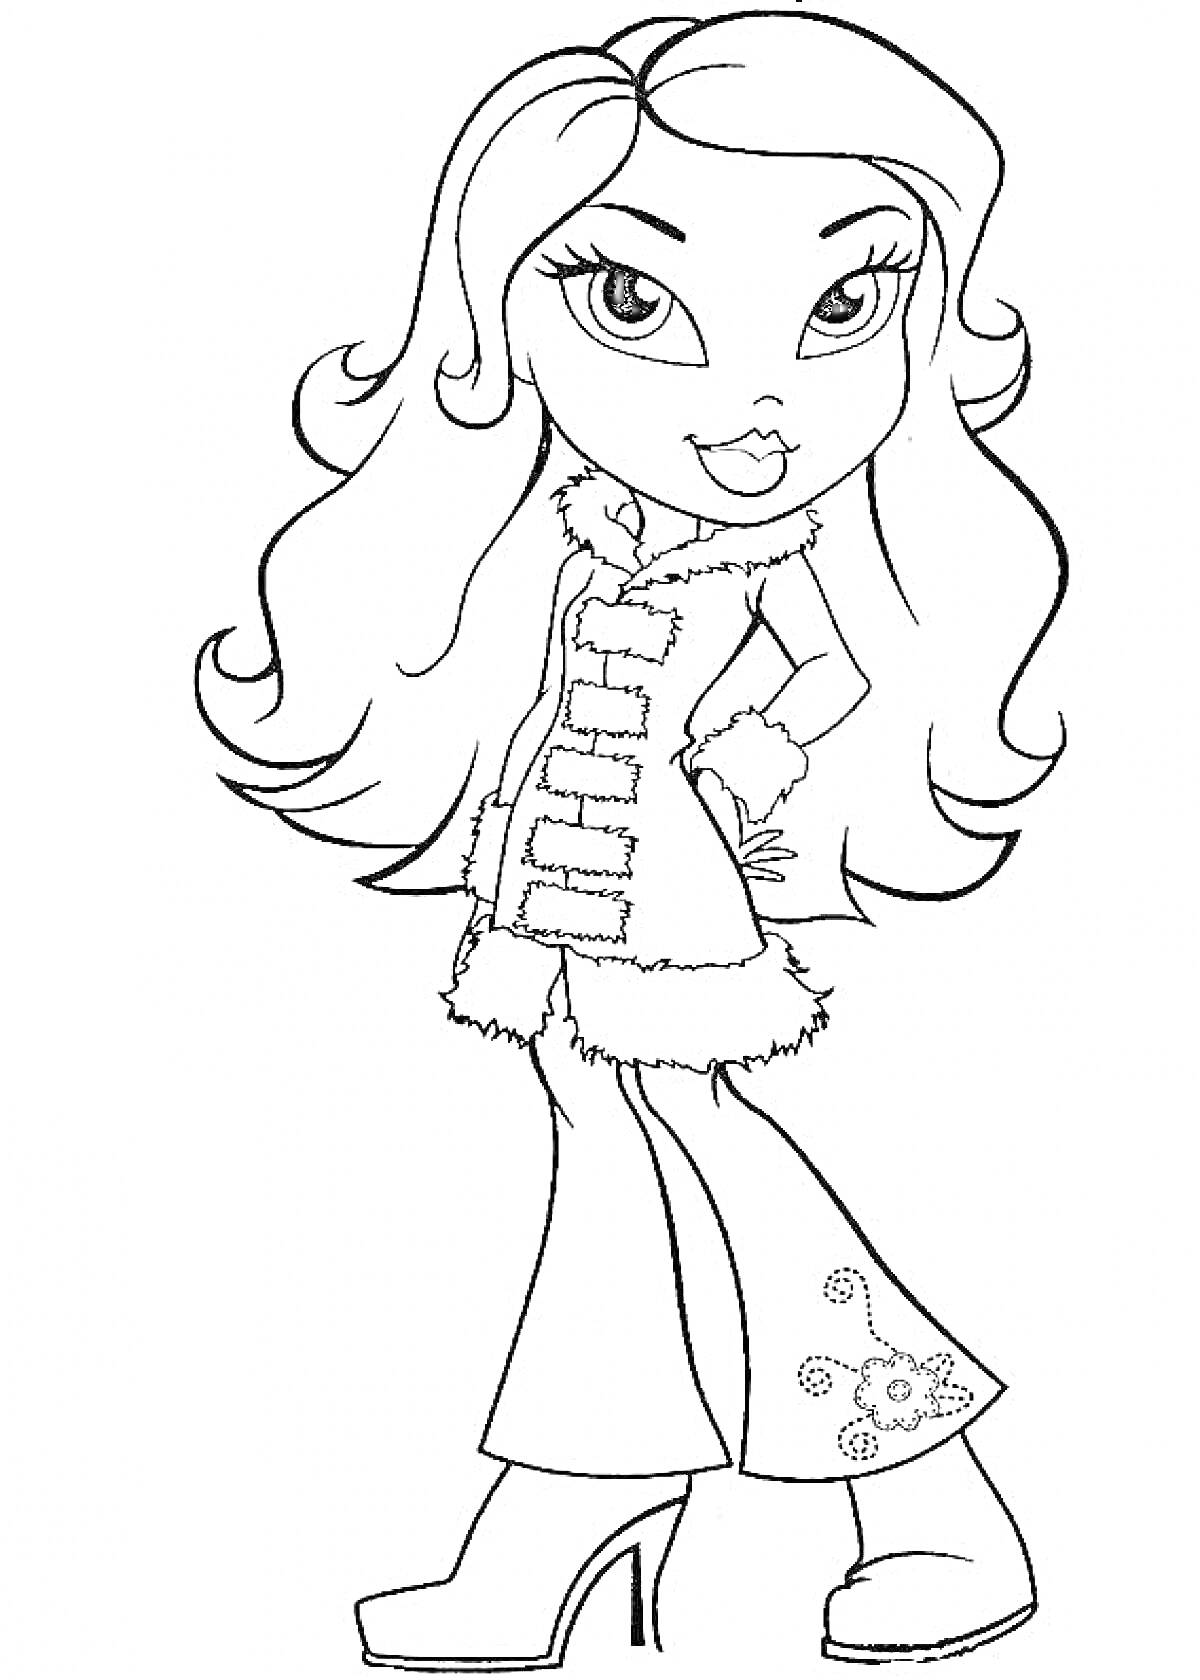 Раскраска Кукла с длинными распущенными волосами, в меховом плаще и брюках с вышивкой, на платформенных ботинках